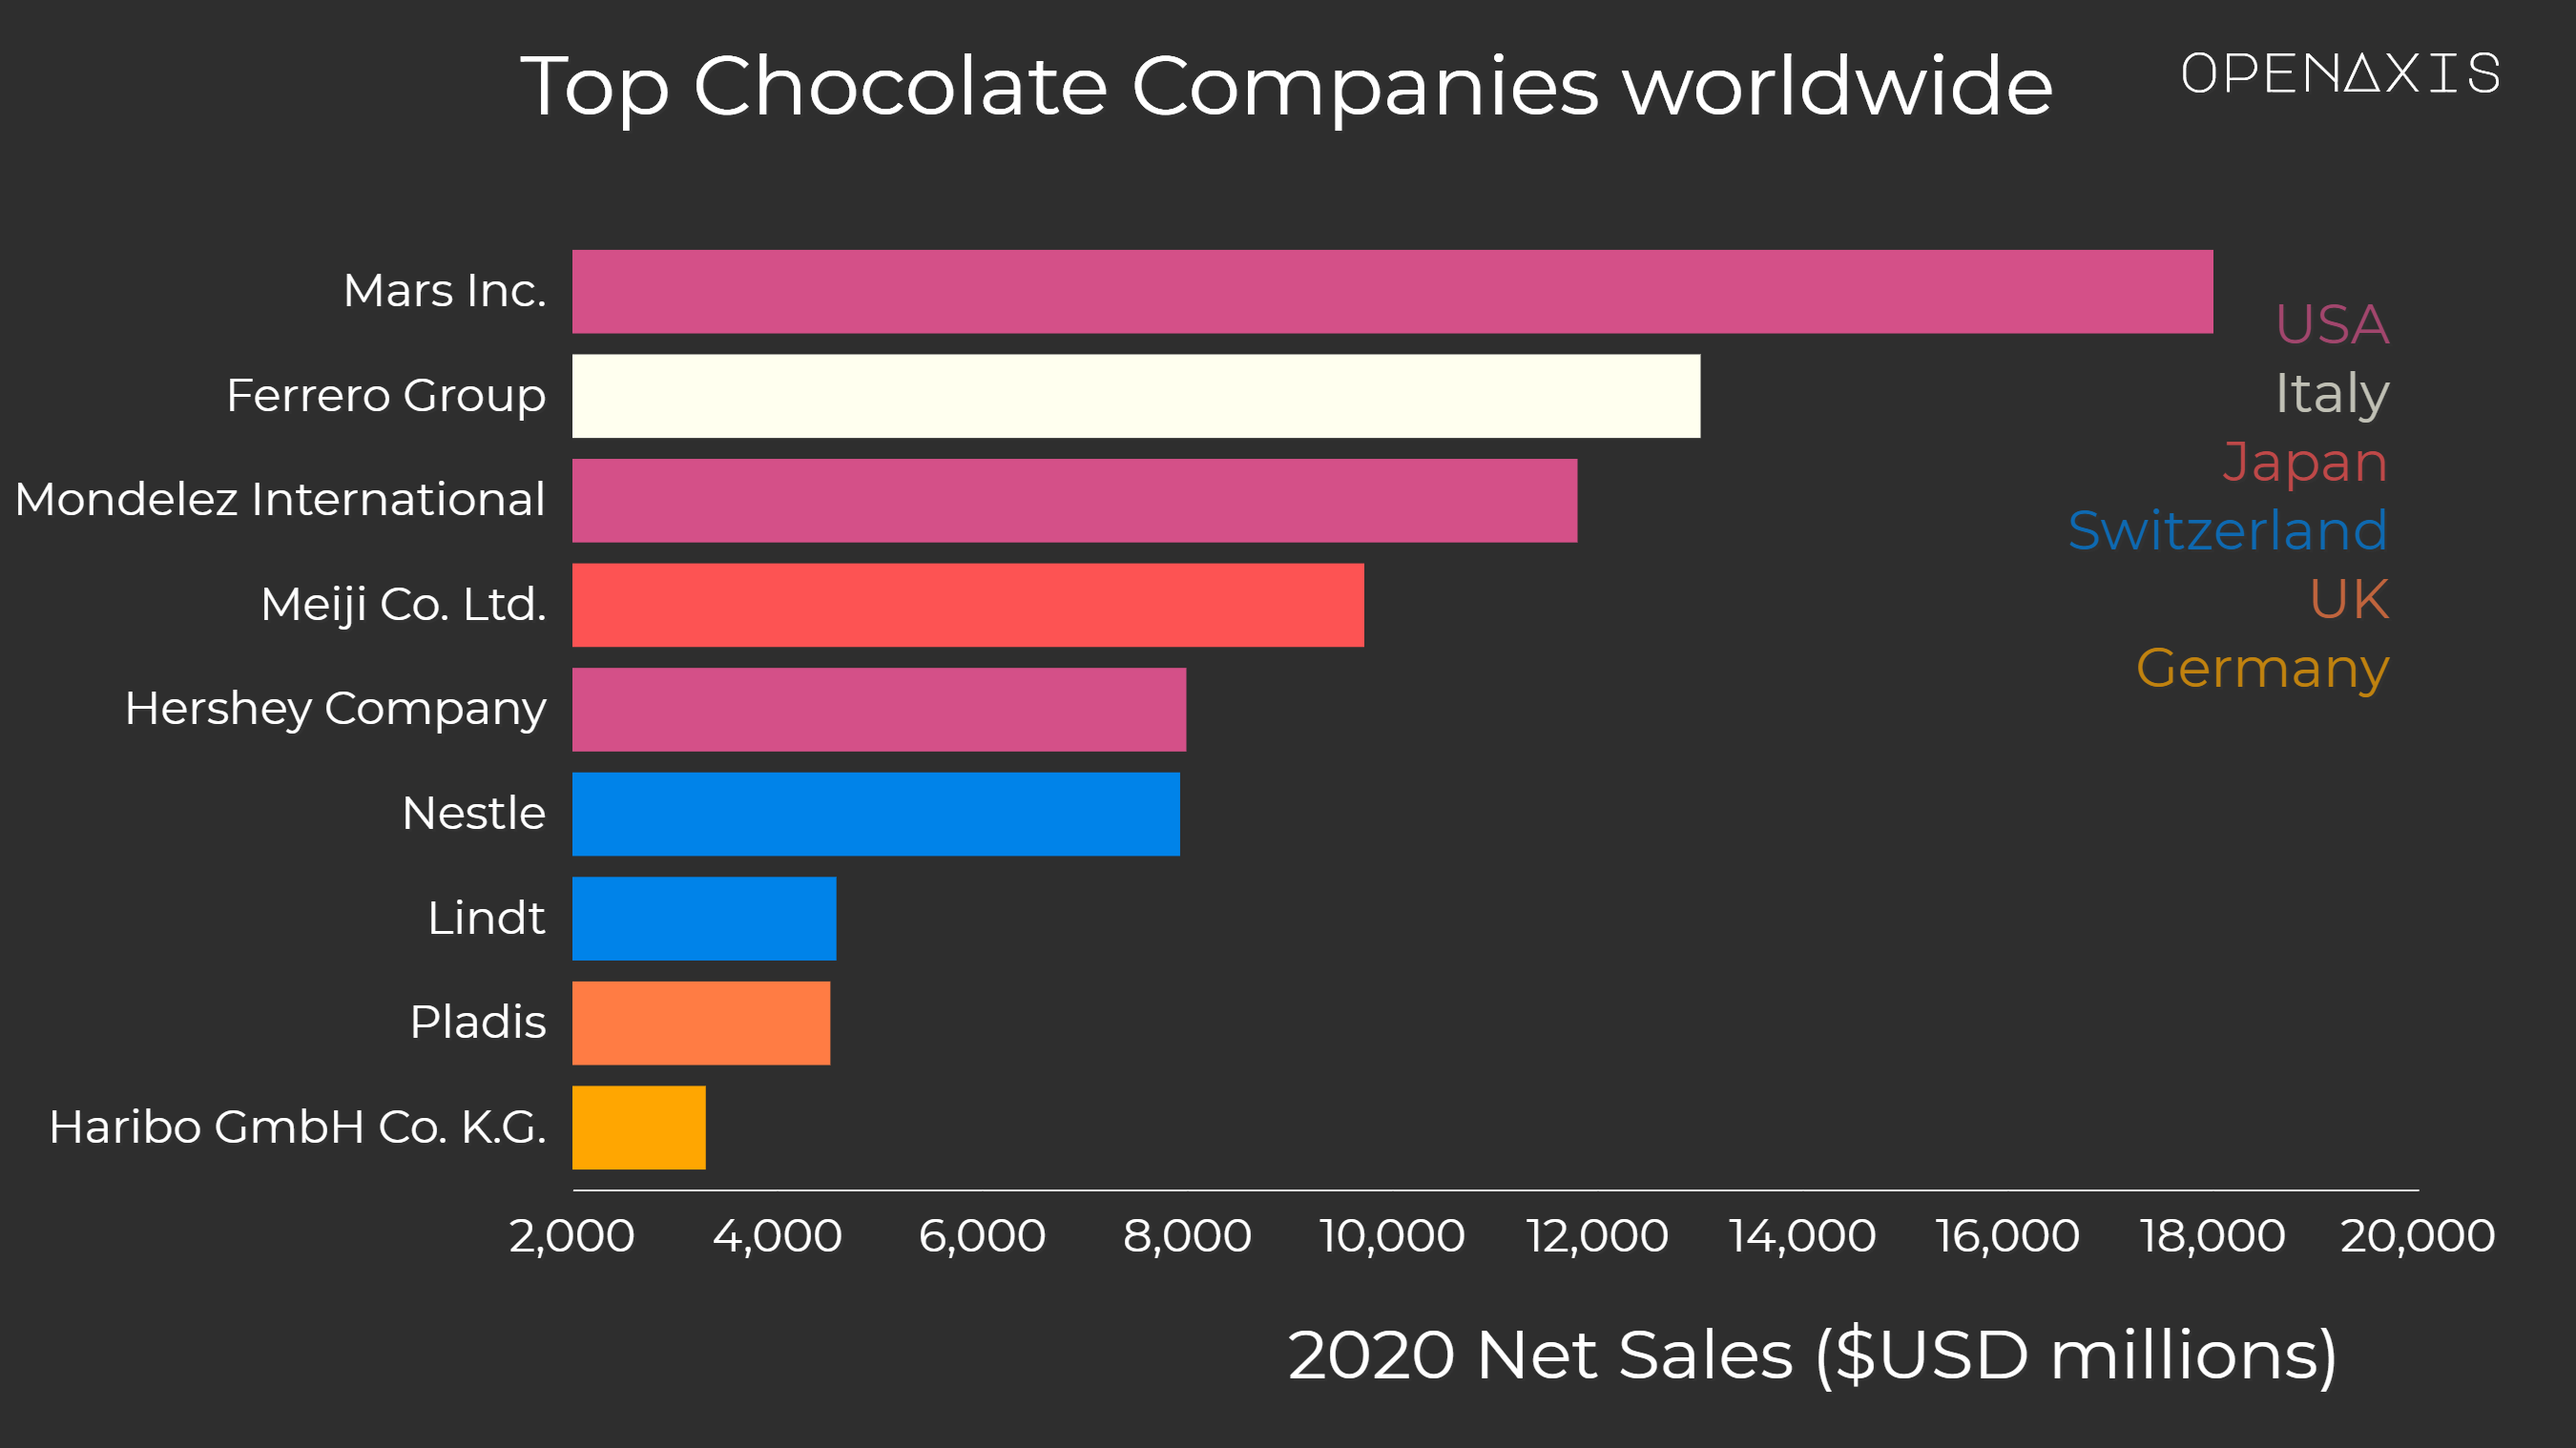 "Top Chocolate Companies worldwide"